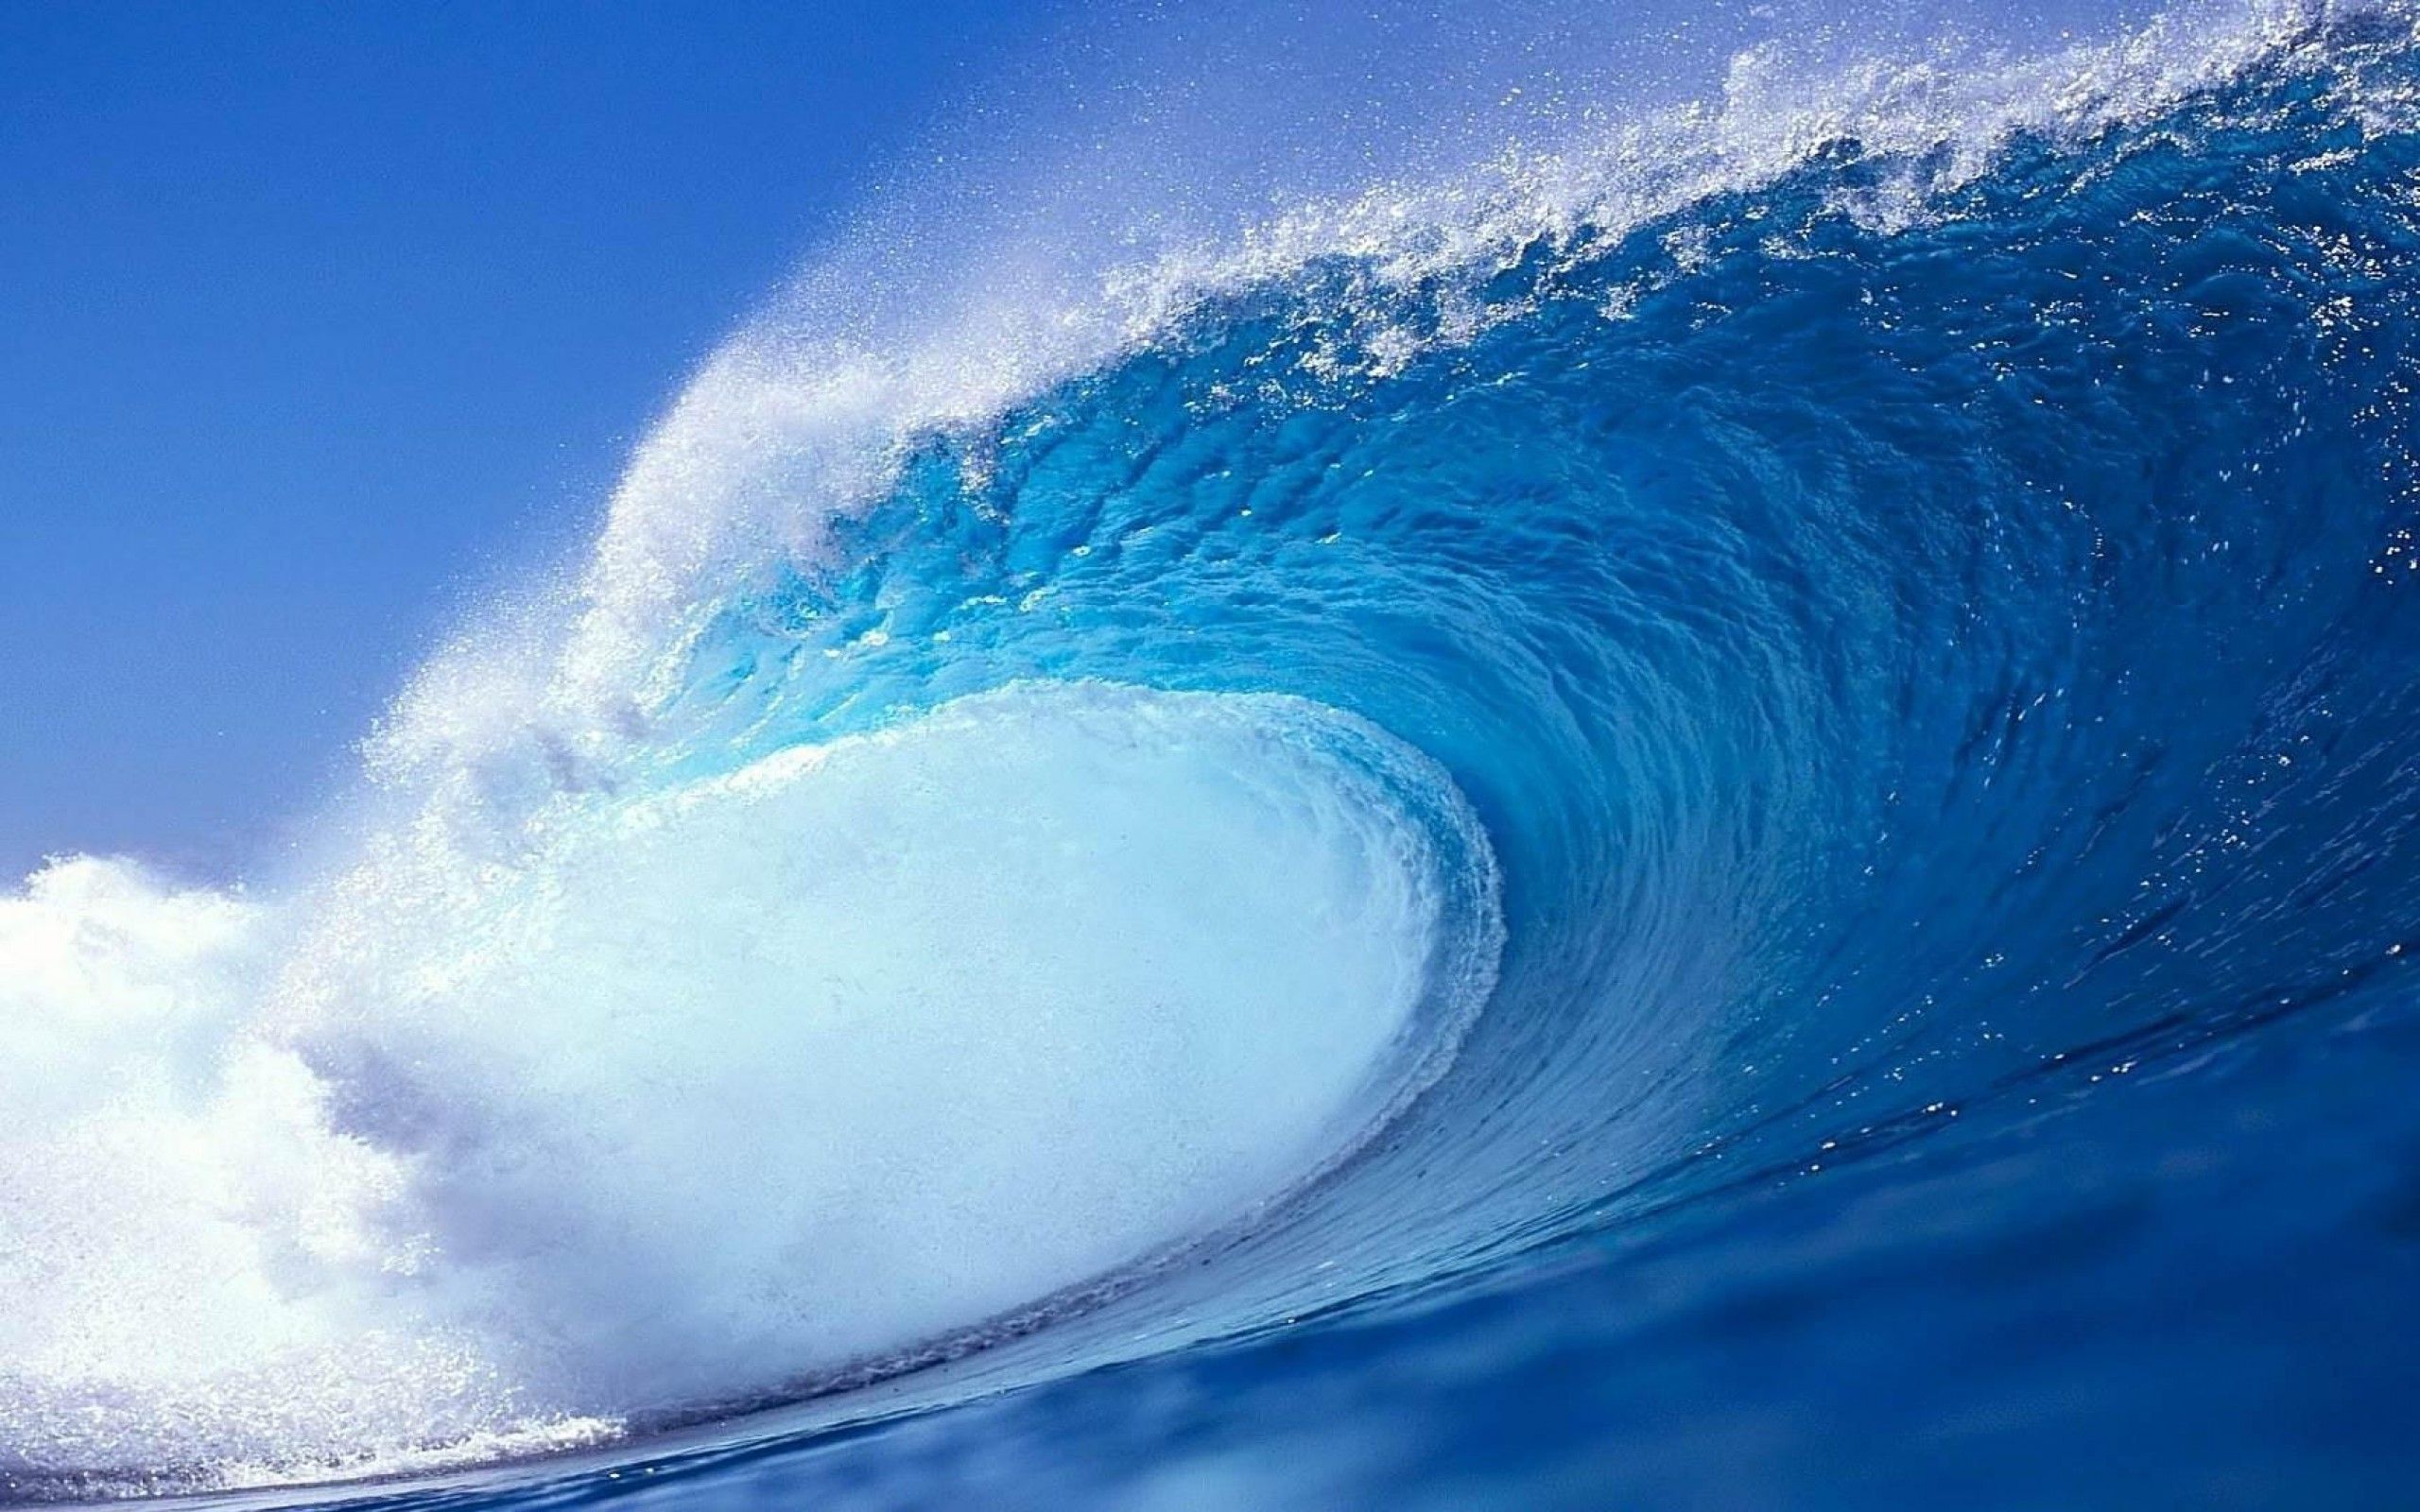 Ocean Waves Wallpaper #1 | Waves | Pinterest | Ocean waves and Ocean